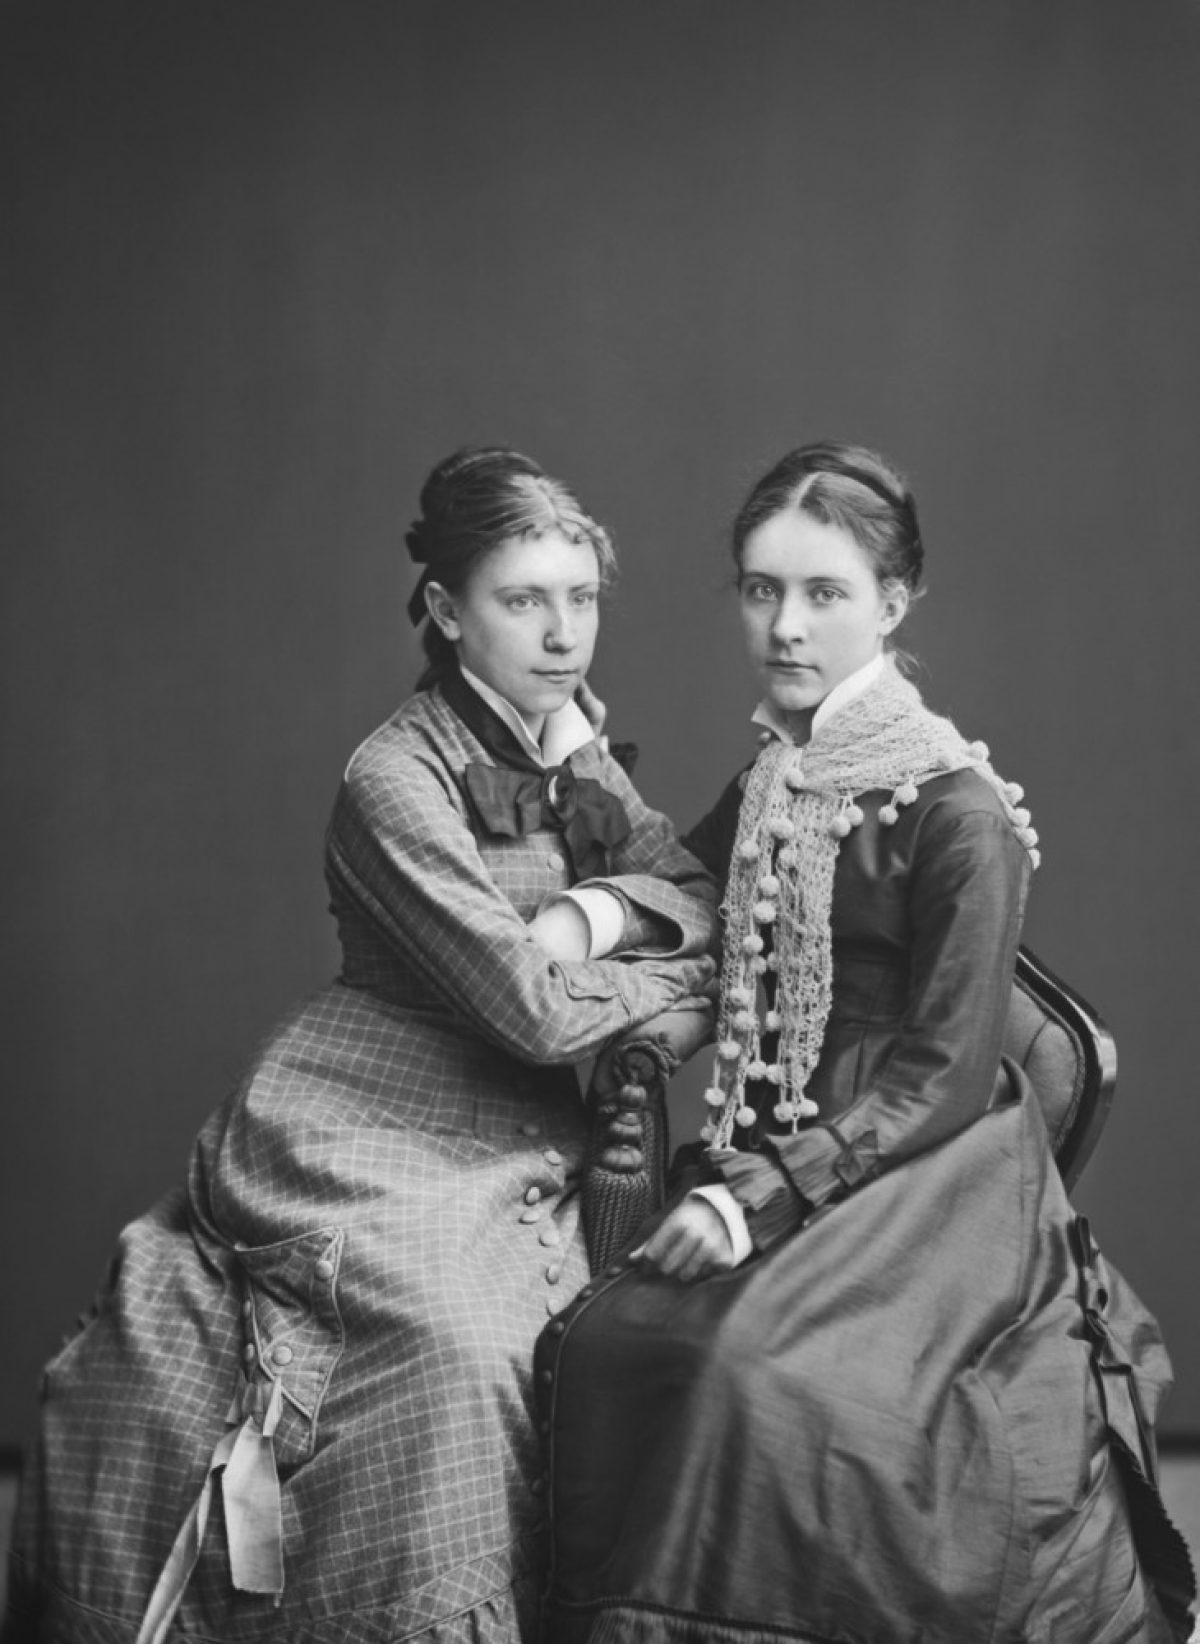 Fröknarna Lilli Törnudd och Vivia Törnudd. Lilli Törnudd arbetade som lärare i teckning och handarbete och var en av de utbildningsreformatorer som verkade i skiftet av 1800- och 1900-talet. Foto: Daniel Nyblin / Museiverkets Bildsamlingar